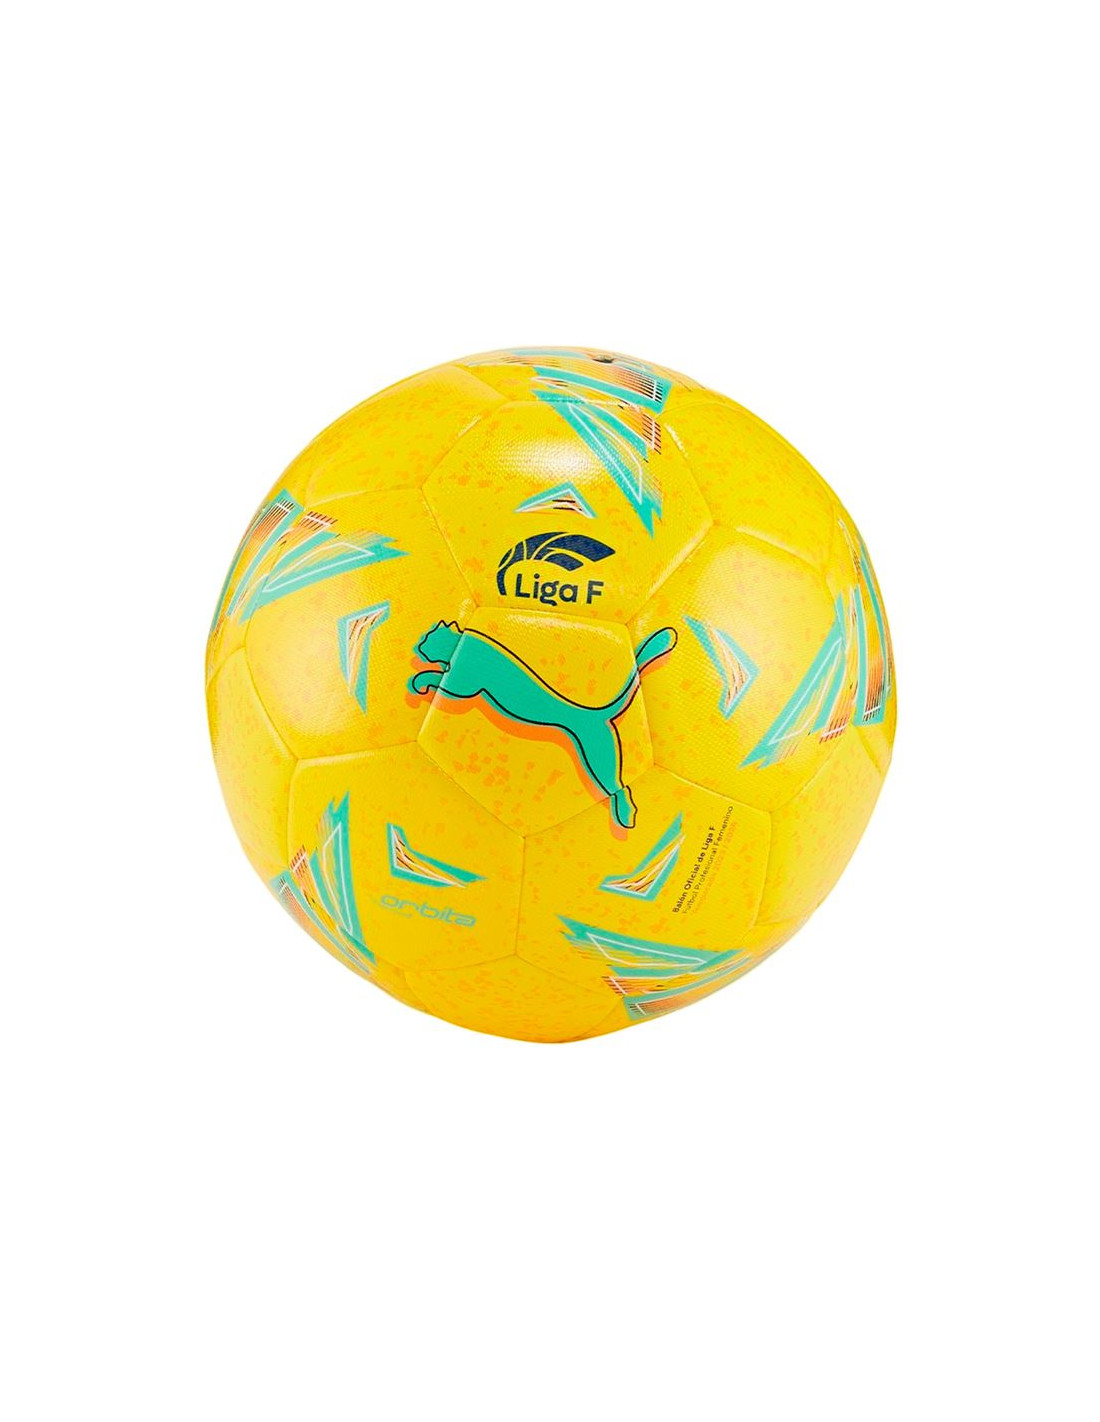 Ballon de football Puma Orbita 5 HS